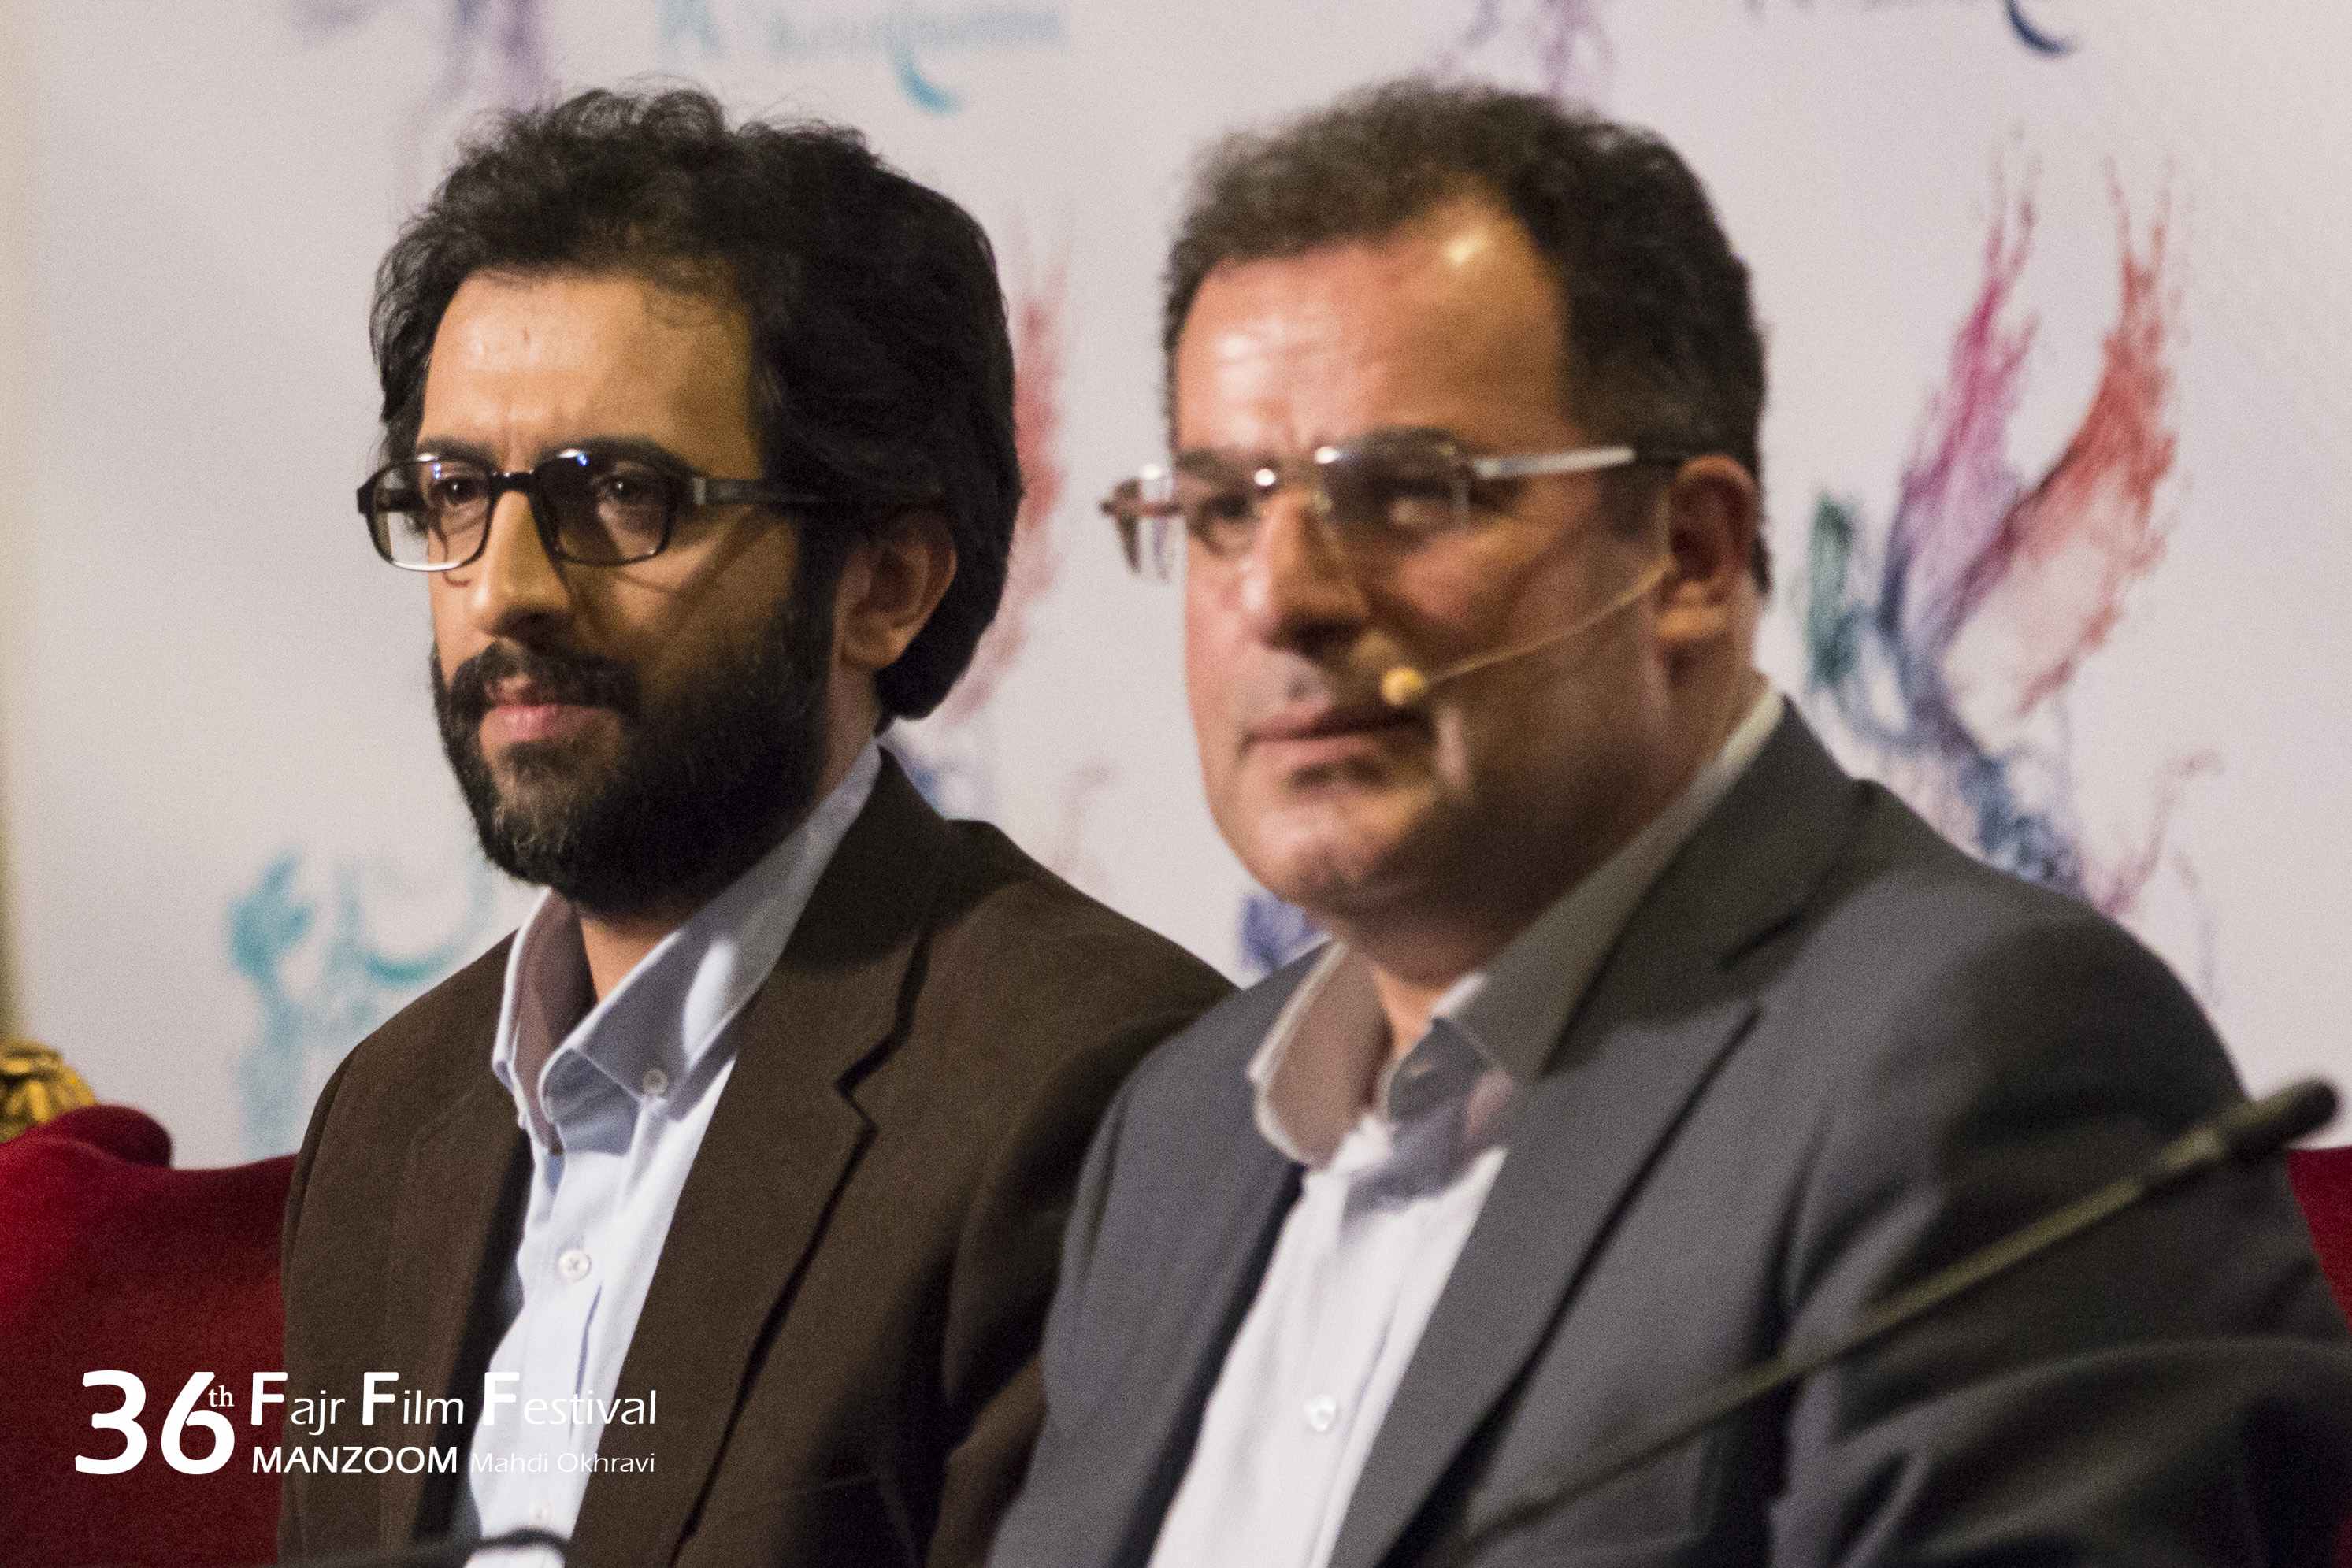 نشست خبری فیلم سینمایی دارکوب با حضور بهروز شعیبی و محمود گبرلو